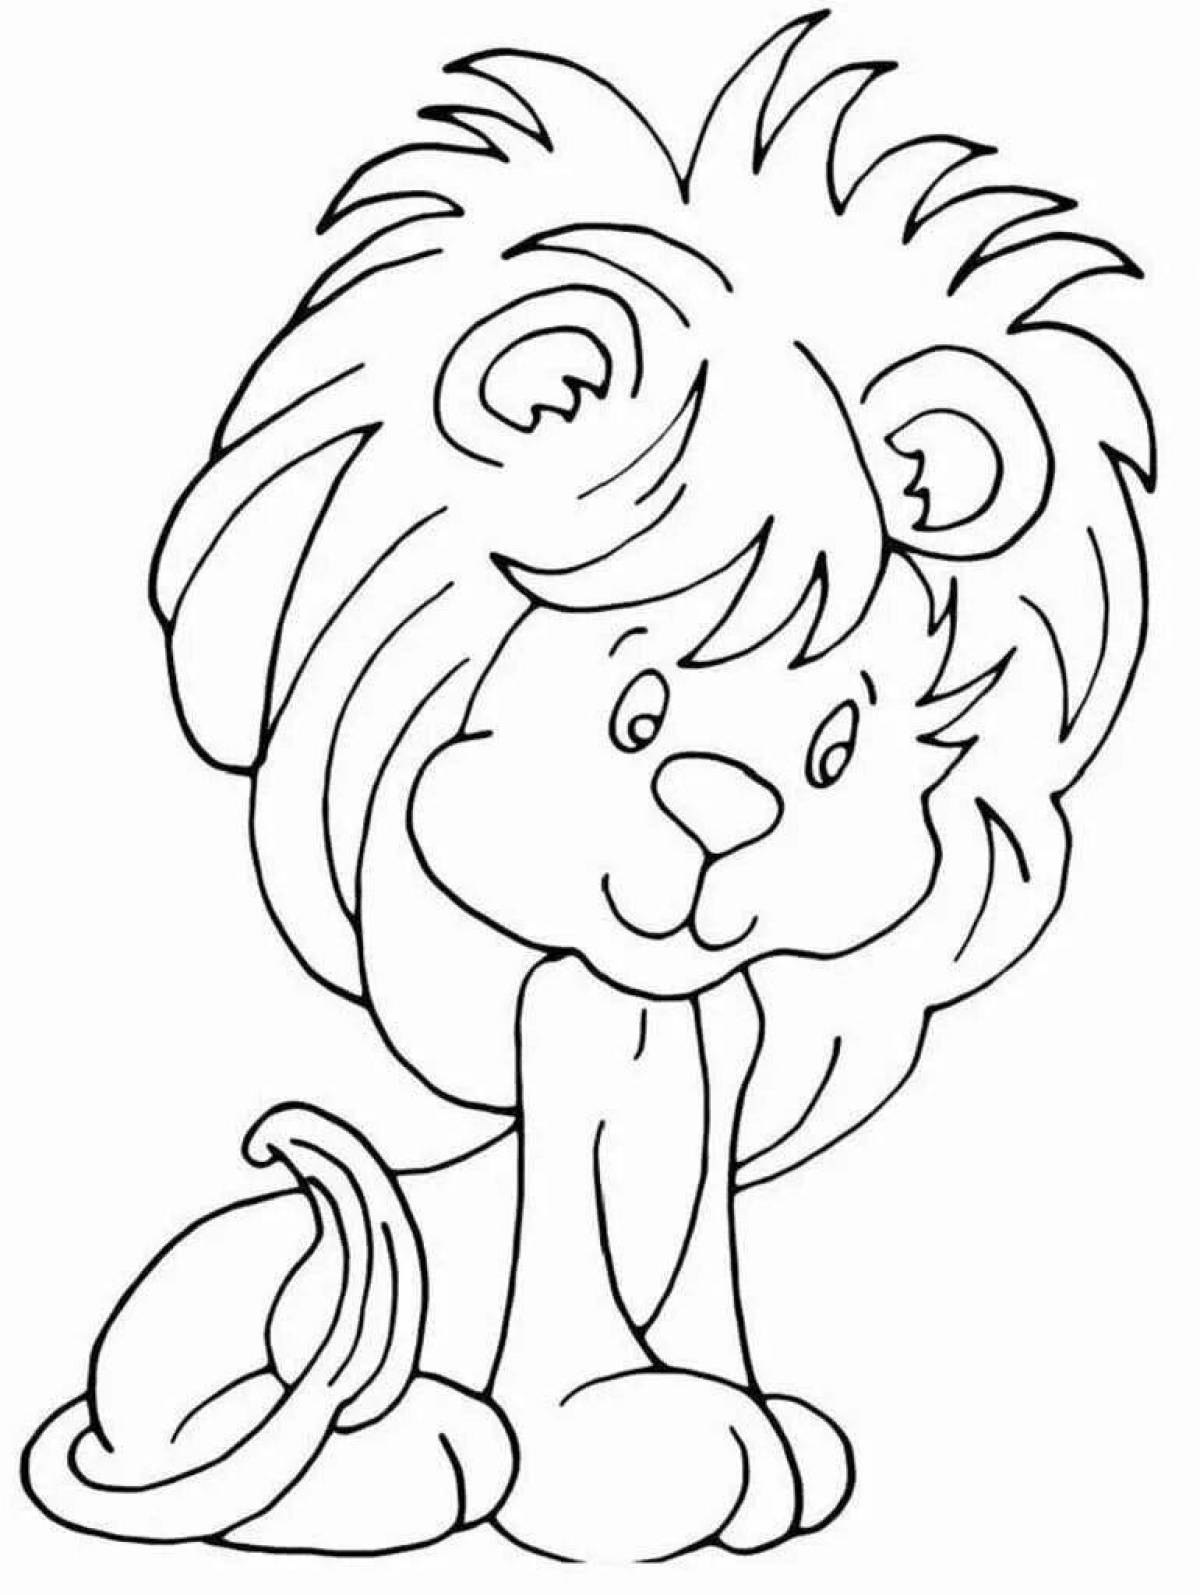 Восхитительная раскраска львенка для детей 3-4 лет